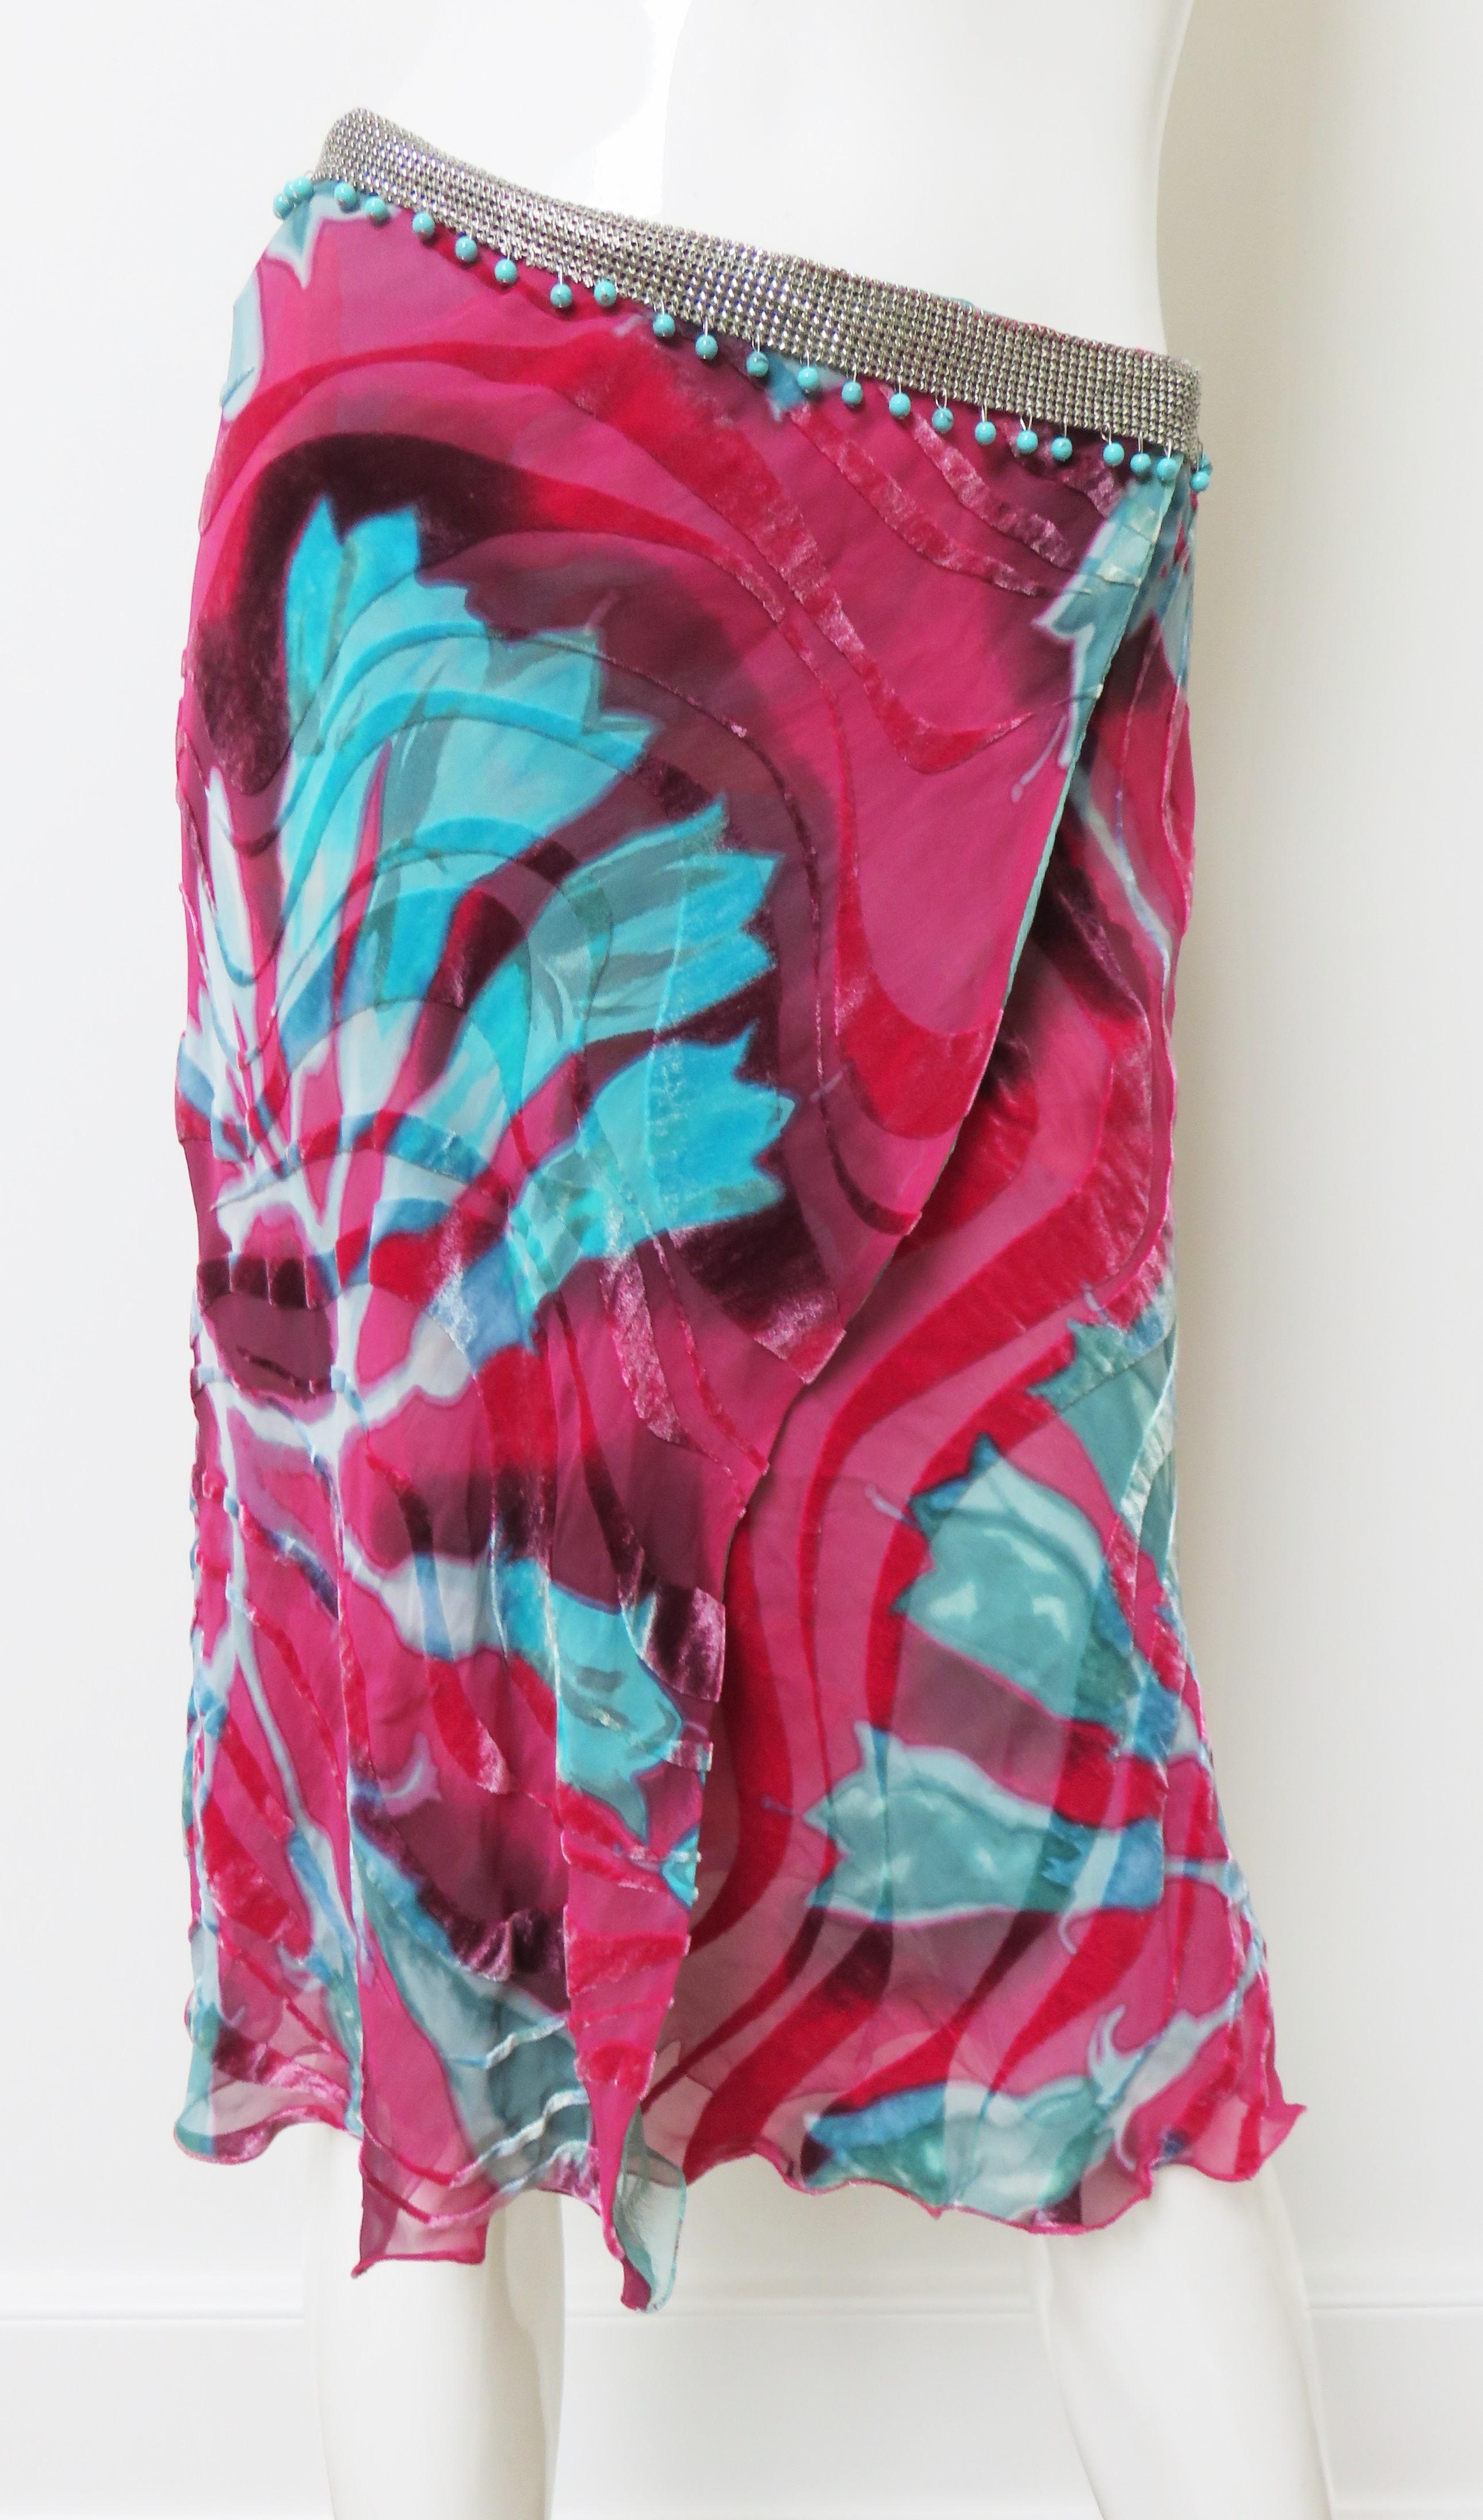 Magnifique jupe portefeuille en velours coupé de Gianni Versace, avec un magnifique motif floral rose et turquoise.   Il est entouré à la taille d'une bande en maille métallique ou en cotte de mailles, avec des perles de turquoise suspendues.  Il se